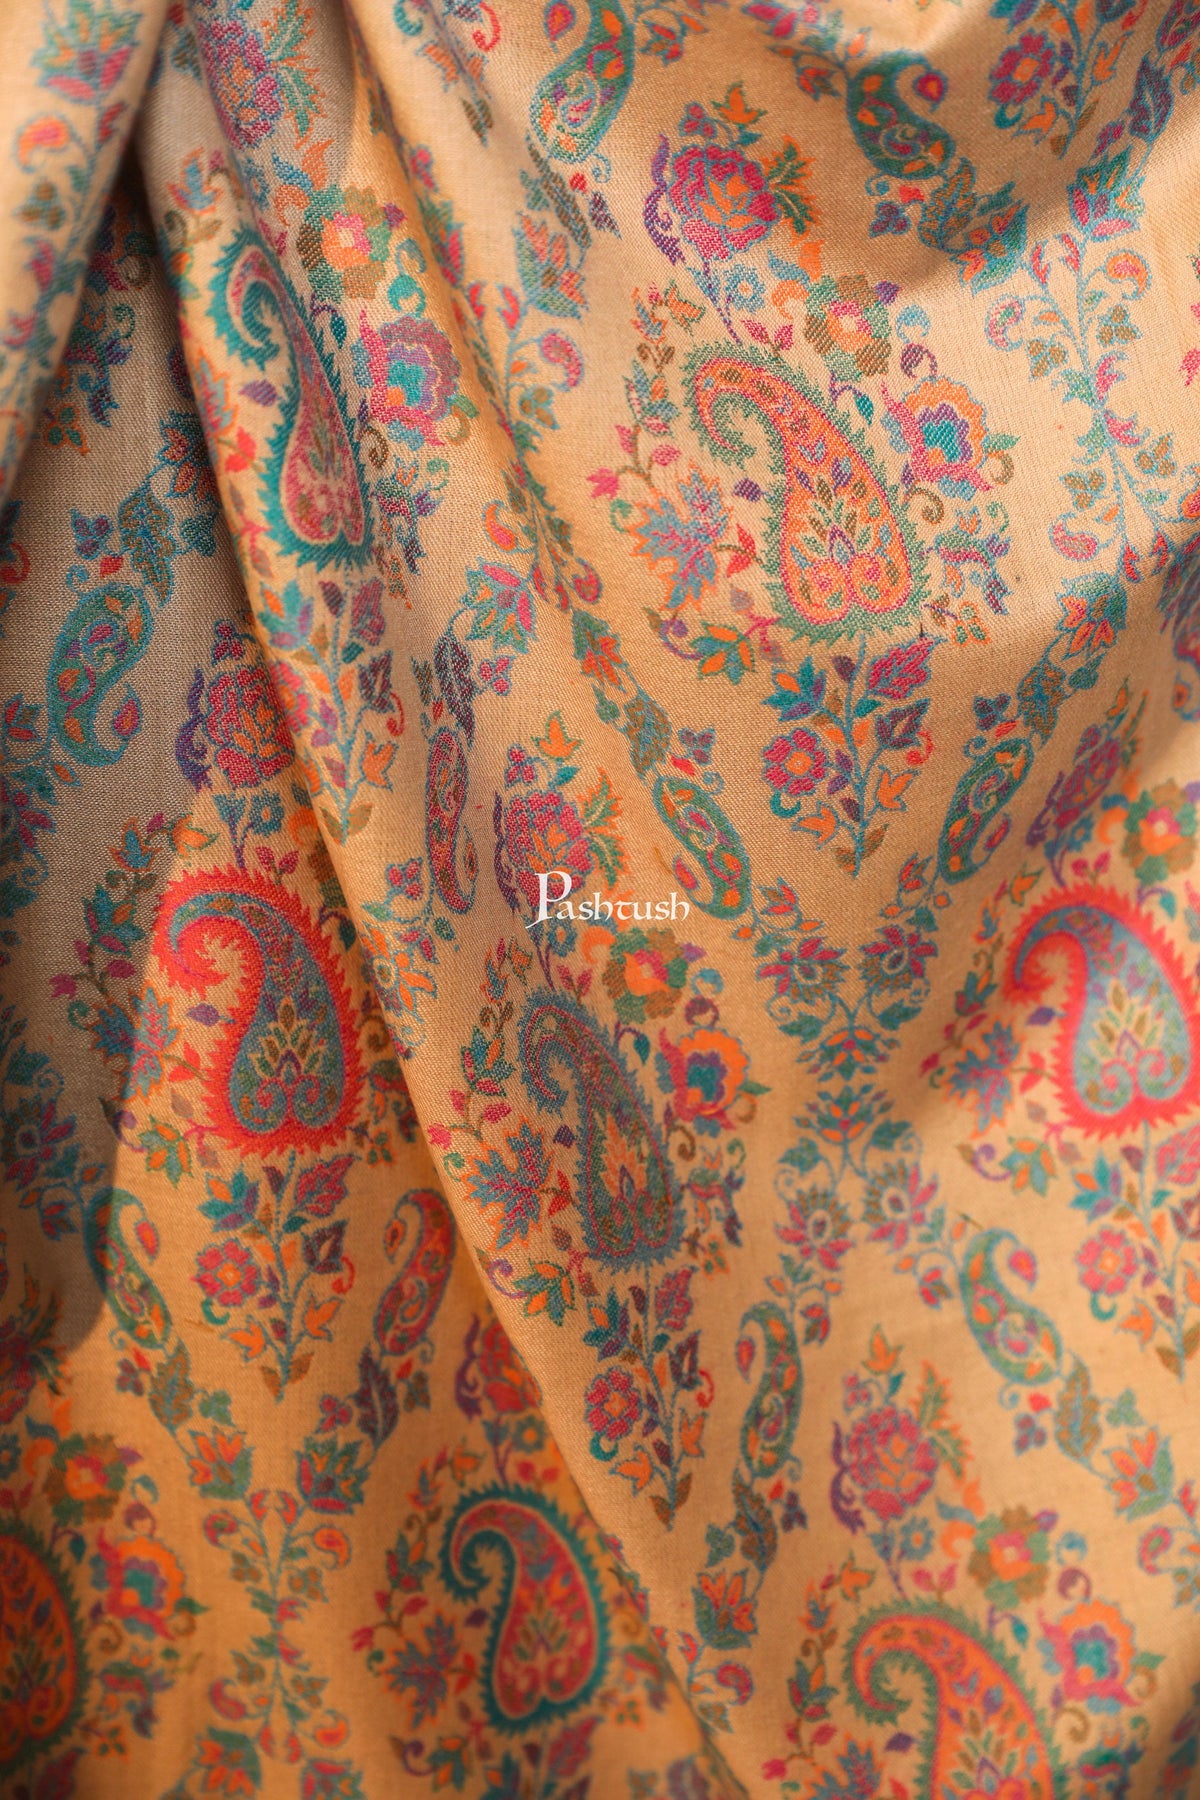 Pashtush women faux pashmina shawl, ethnic weave design, multi